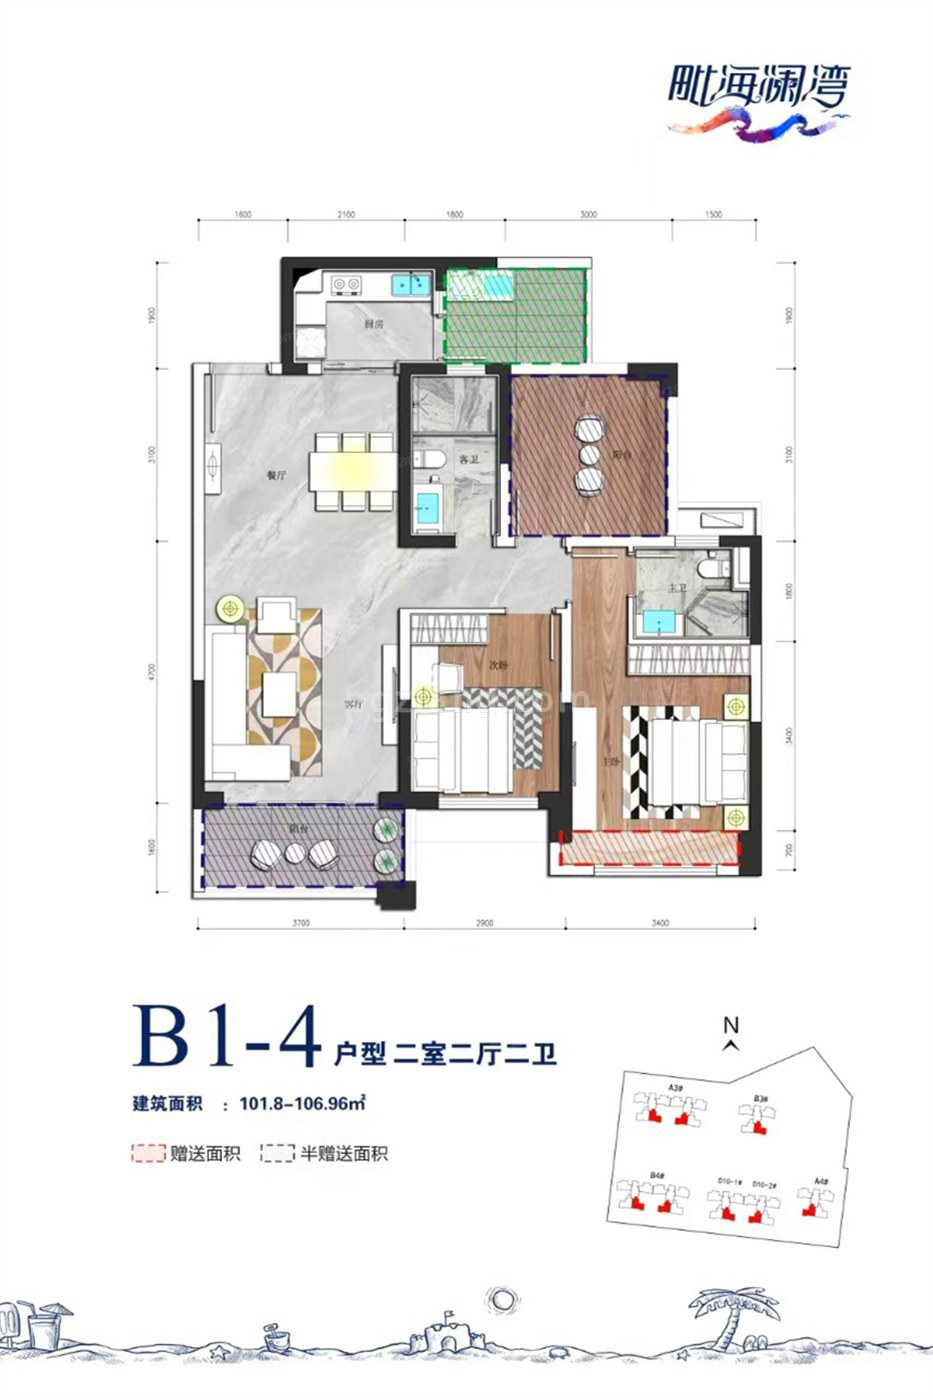 毗海澜湾 高层 B1-4户型 2室2厅2卫 建筑面积101.80-106.96㎡